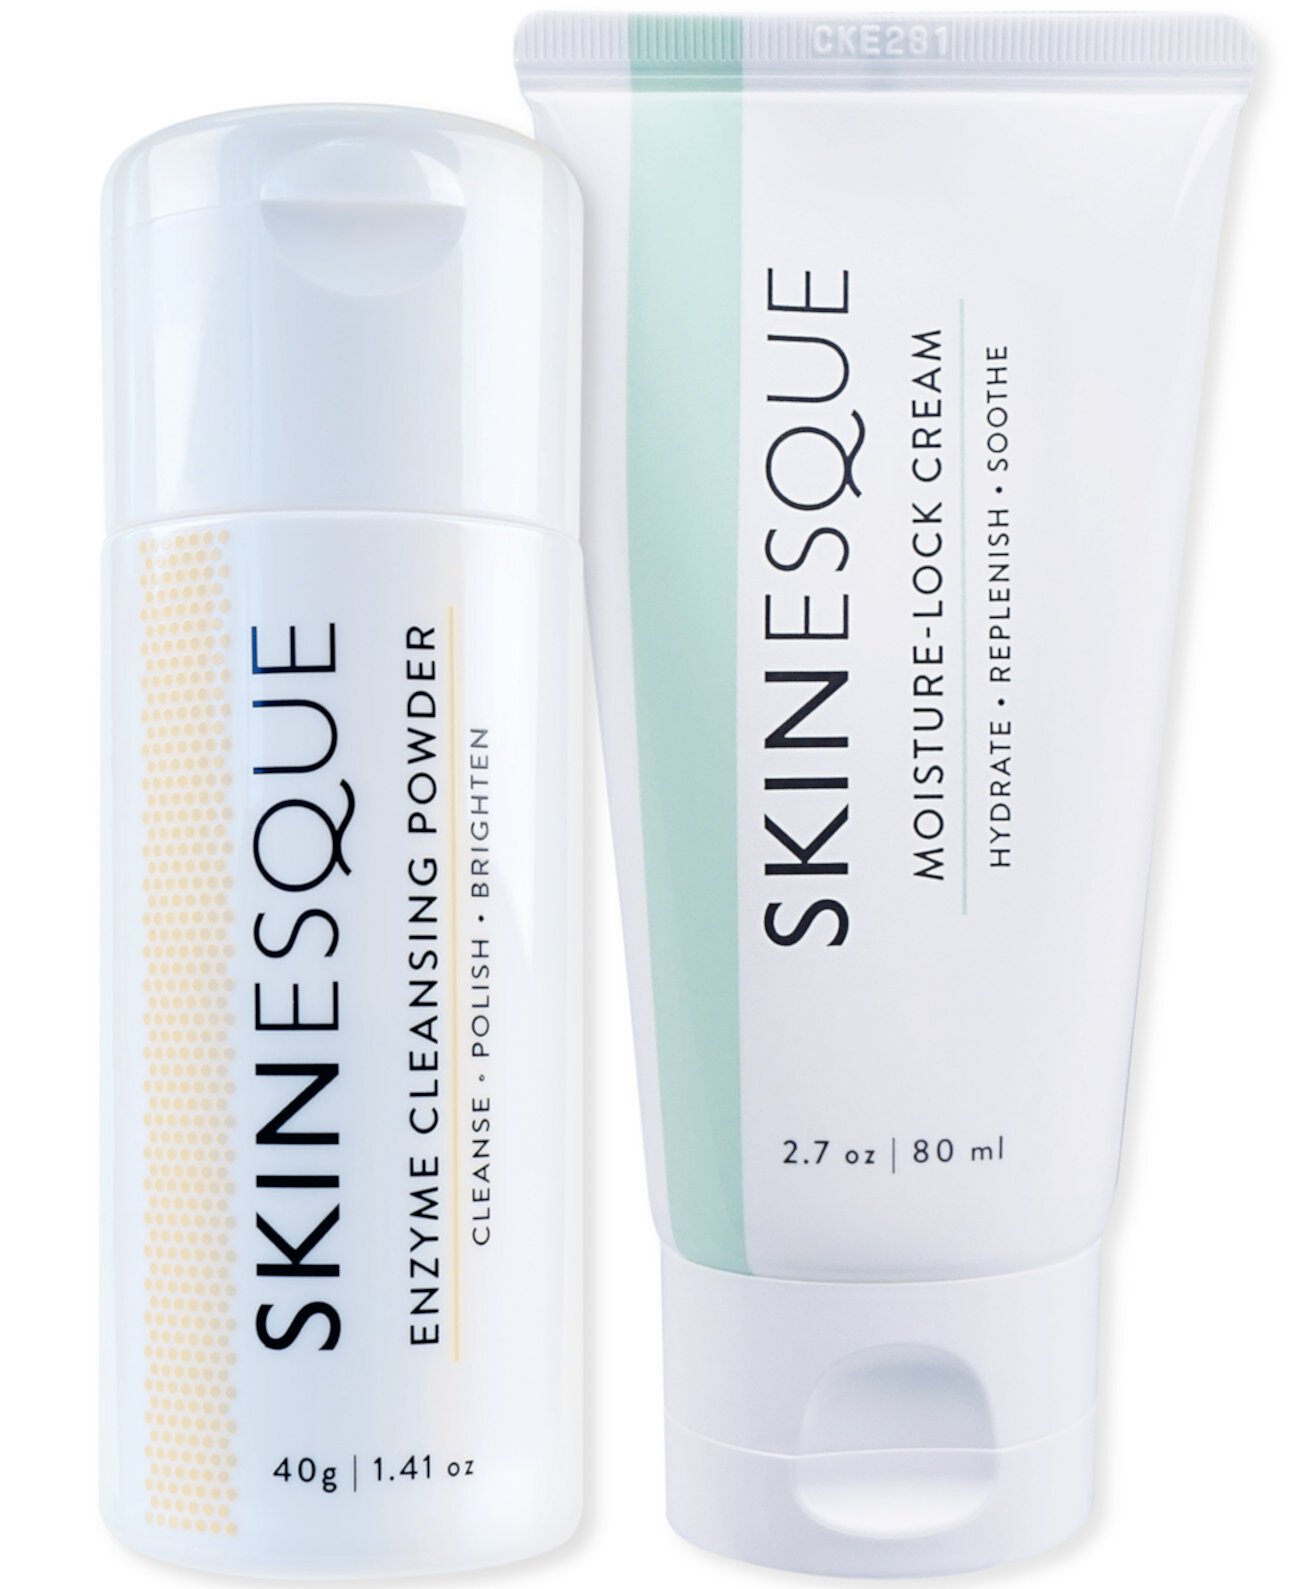 The Skinesque Essentials: ферментная очищающая пудра, увлажняющий крем, набор из 2 шт. Skinesque